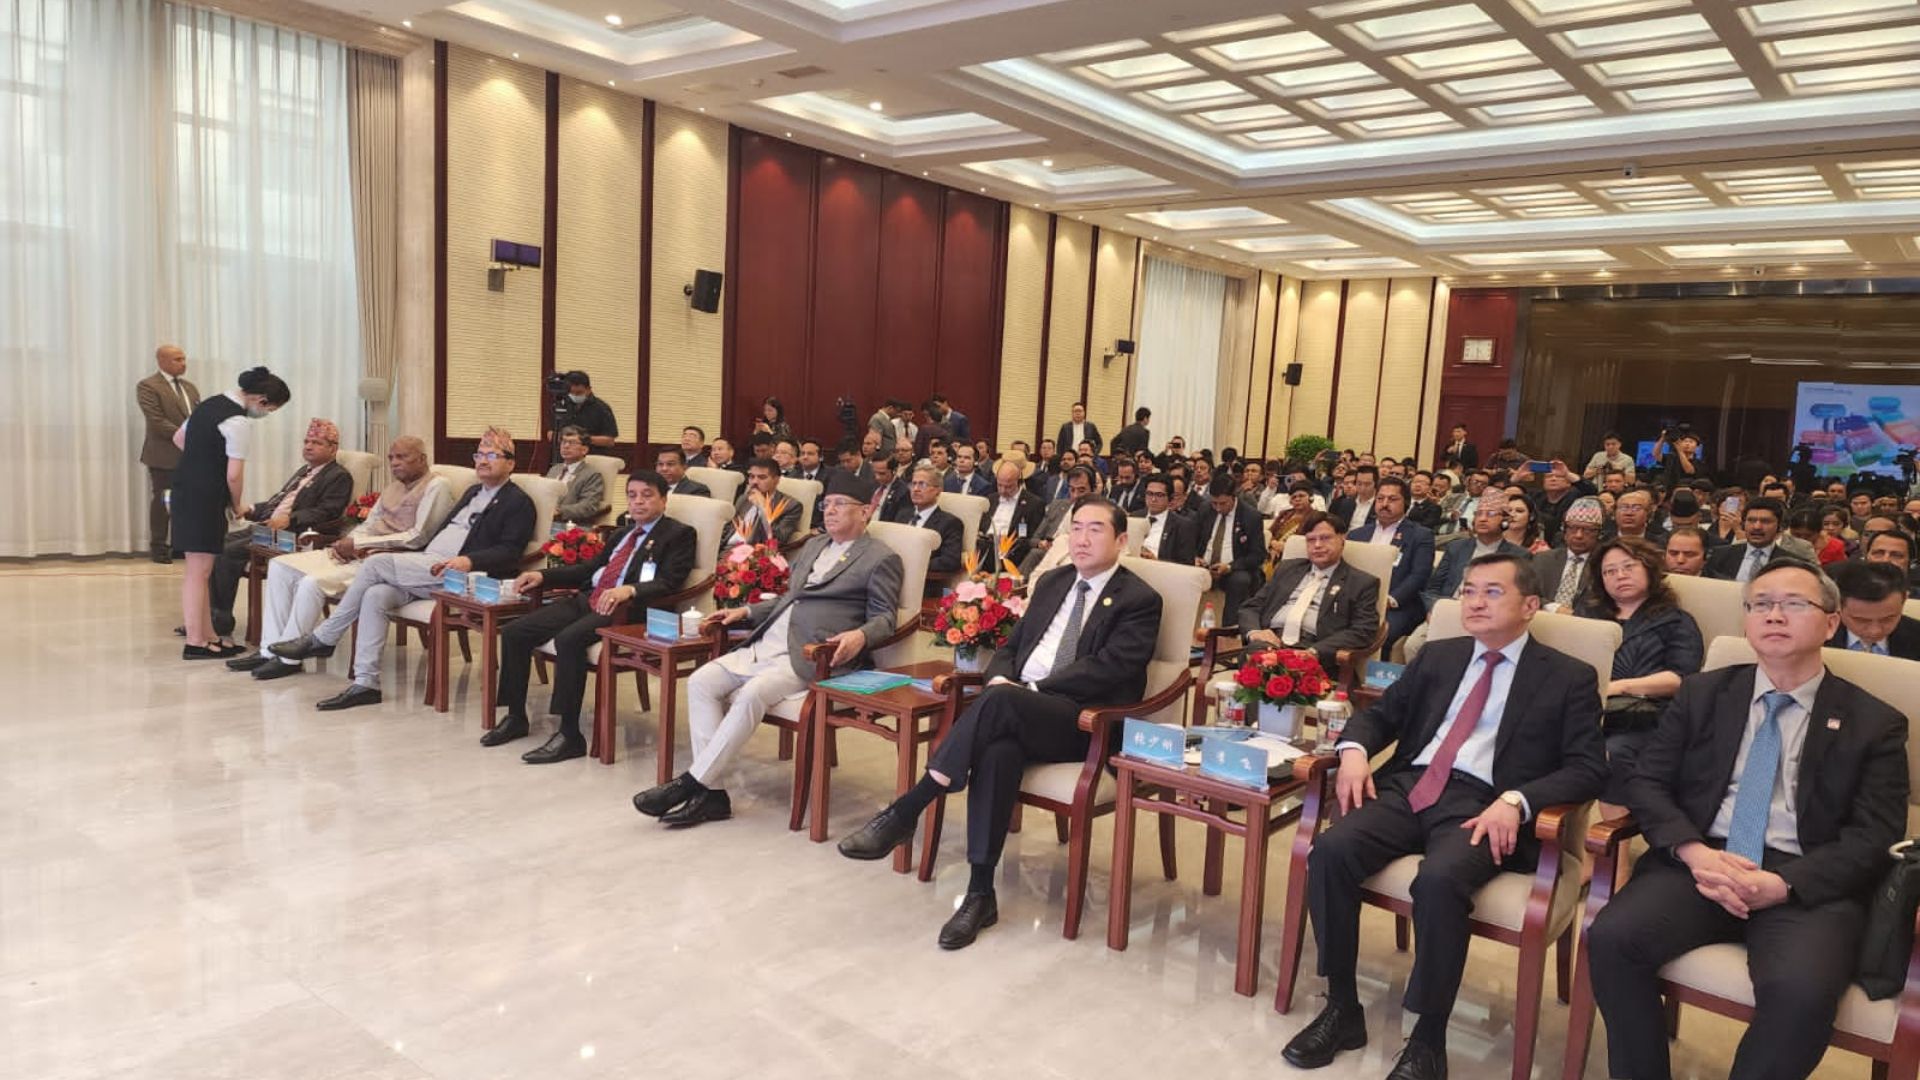 नेपाल चीन बिजनेस समिटमा चिनिया लगानी अभिवृद्धि र व्यापार सहजीकरणका लागि सहकार्यमा जाेड